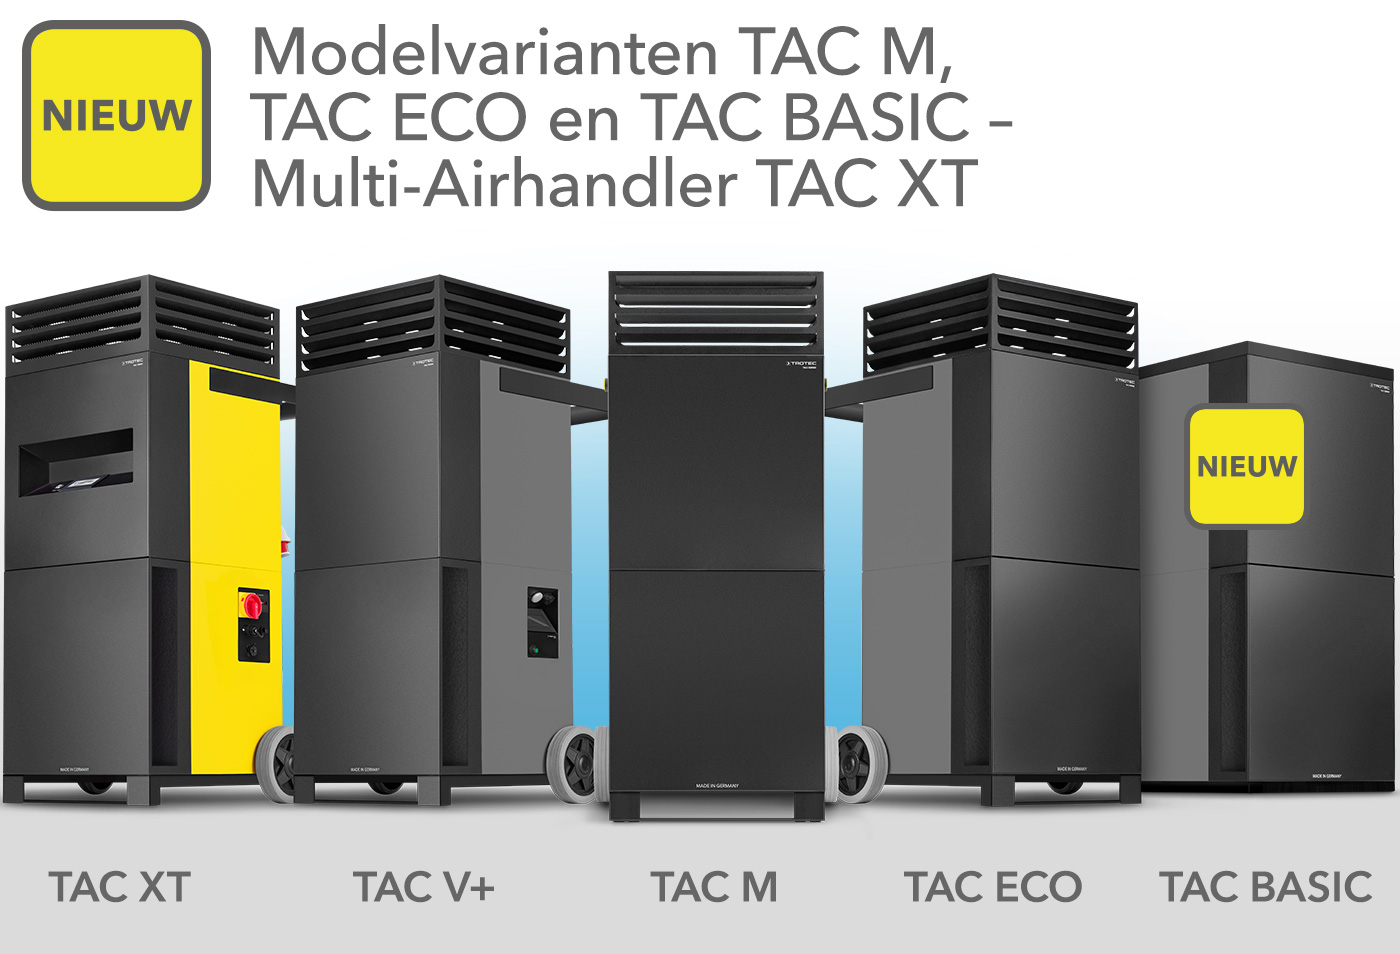 Modelvarianten TAC M en TAC-ECO